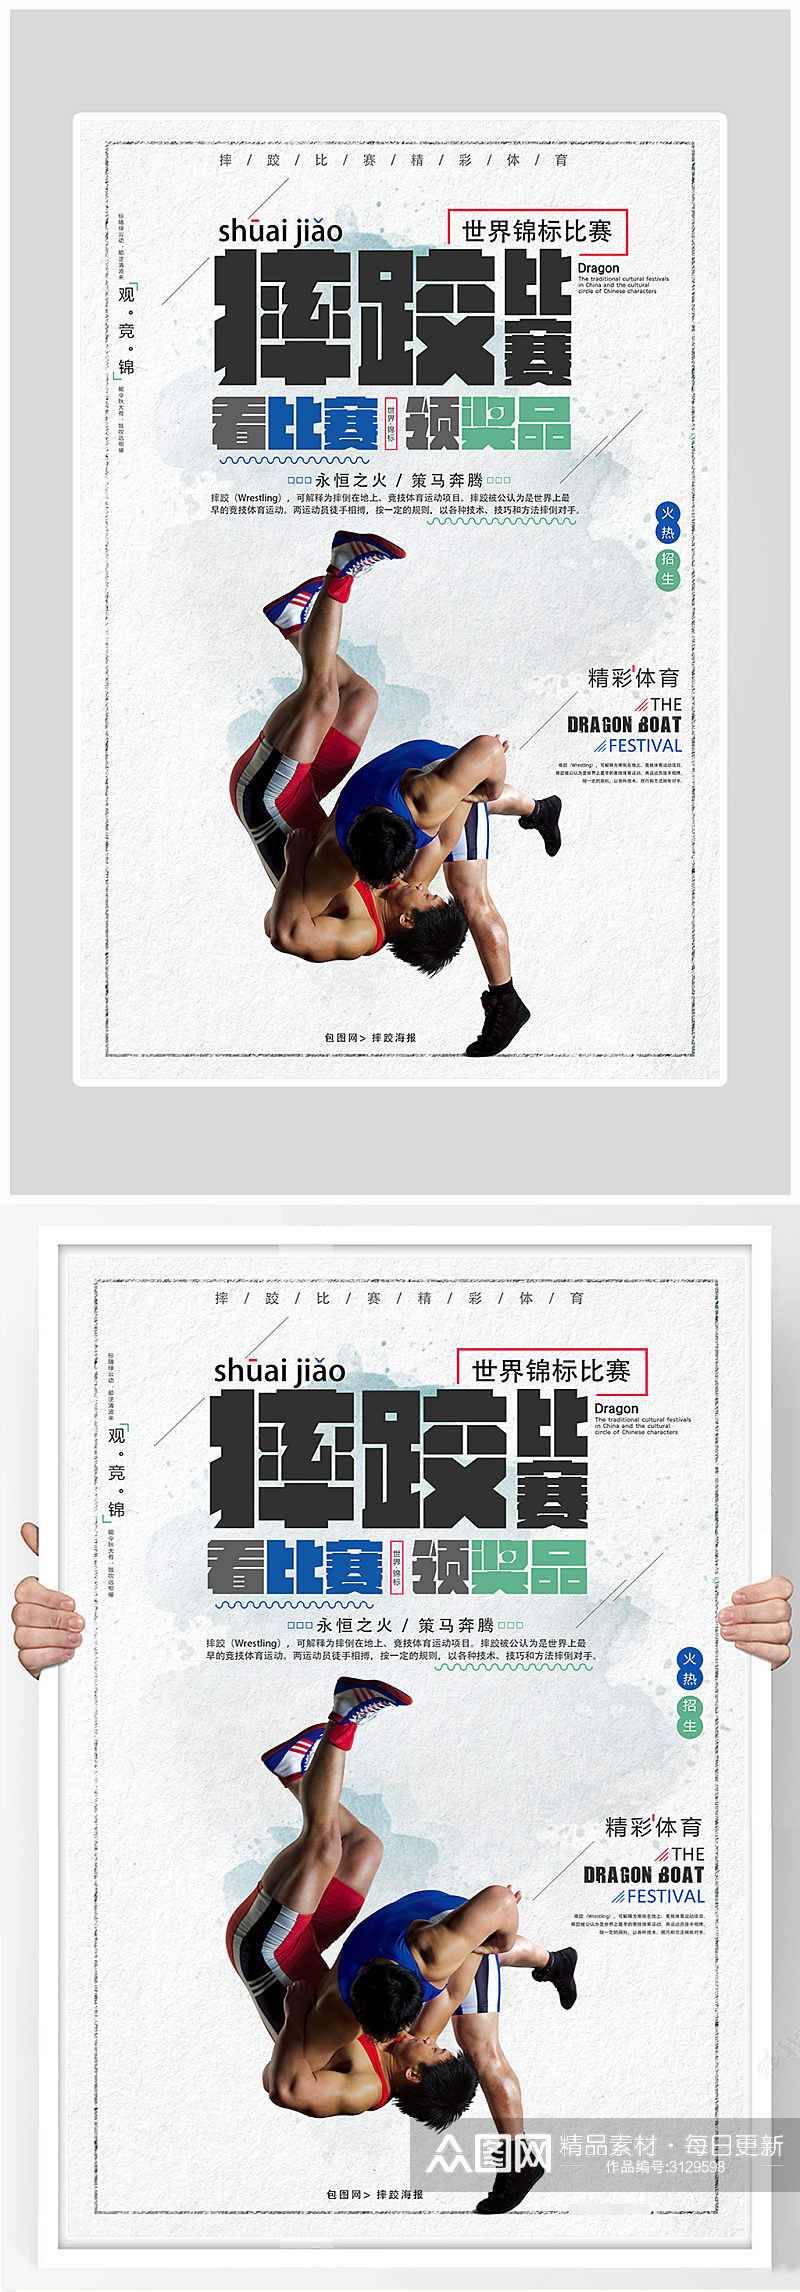 创意简约摔跤运动健身海报设计素材